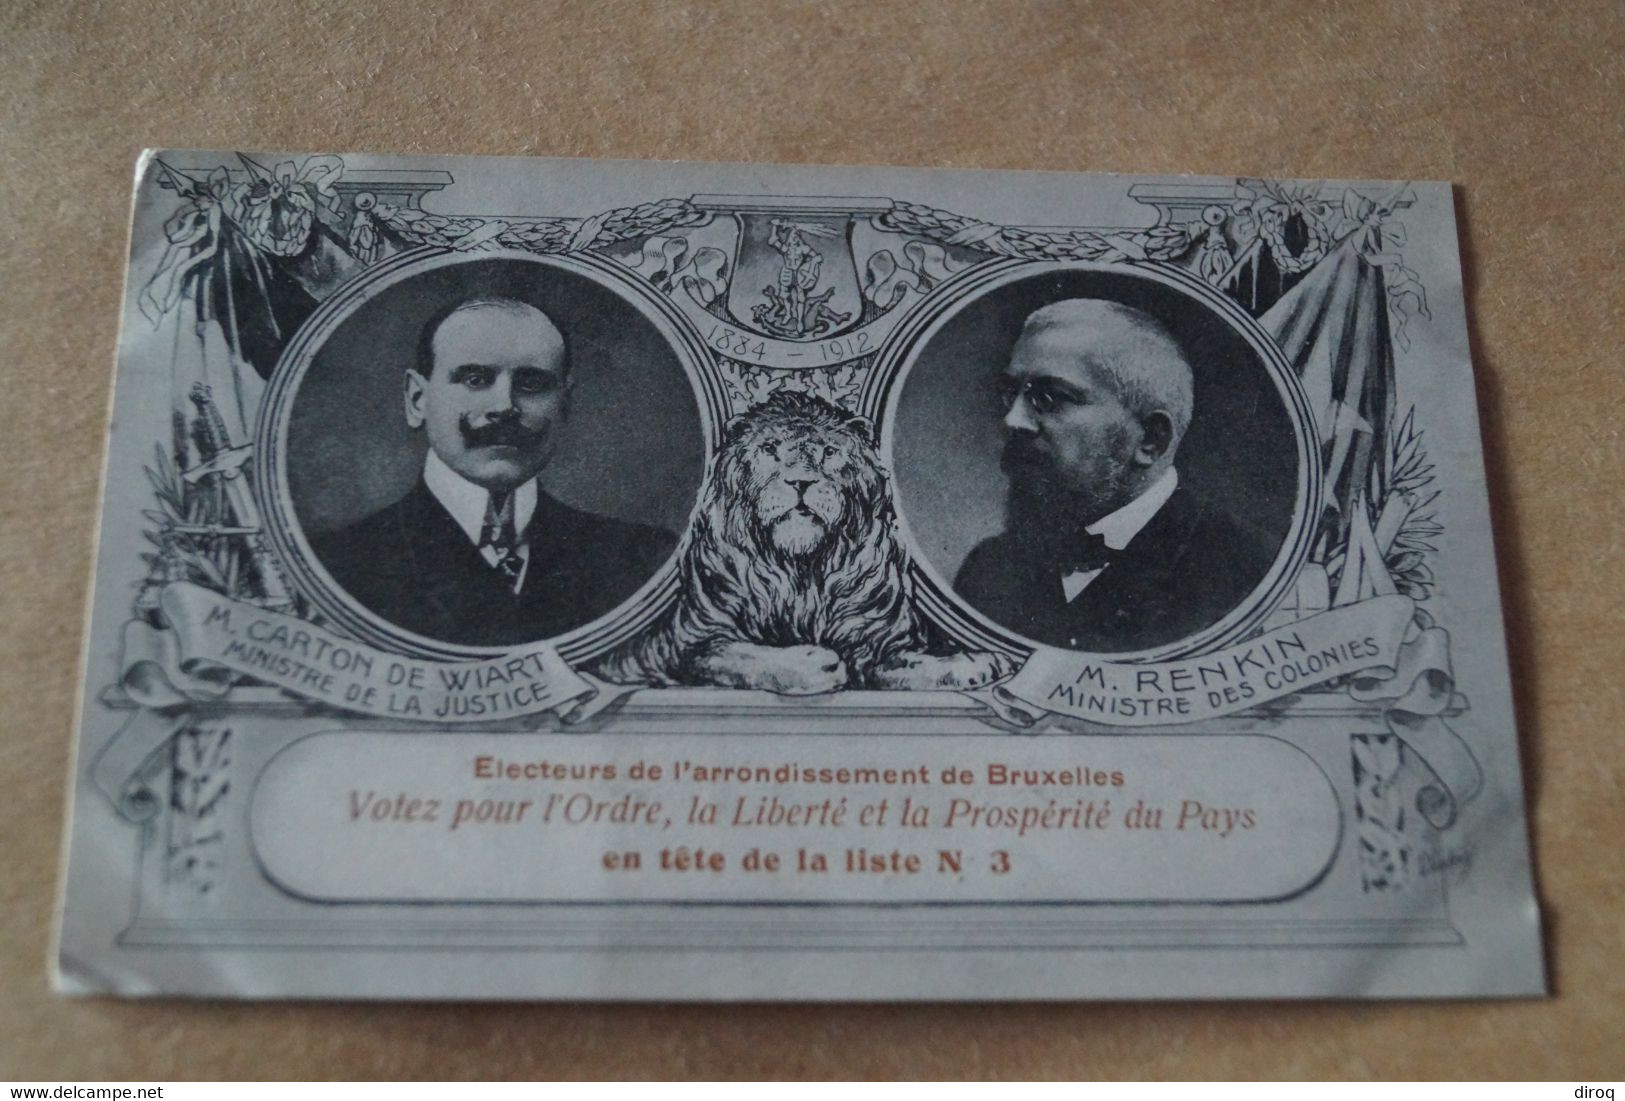 Liste N° 3,Bruxelles élections 1912 ,Superbe Ancienne Carte Publicitaire,originale Pour Collection - Politieke En Militaire Mannen